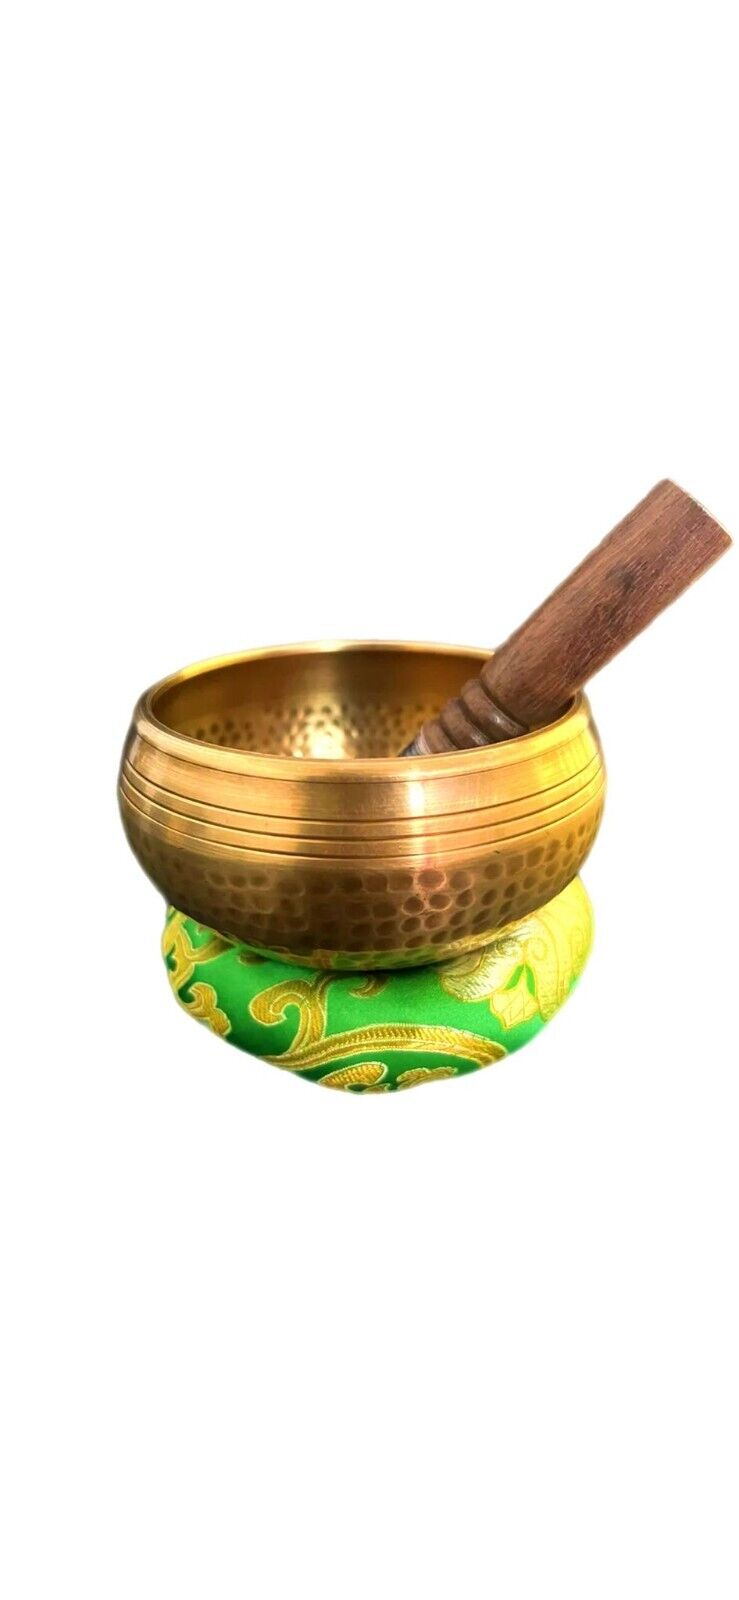 4.5”Handbeaten Tibetan Singing Bowl Set  for Yoga, Meditation, Sound healing.